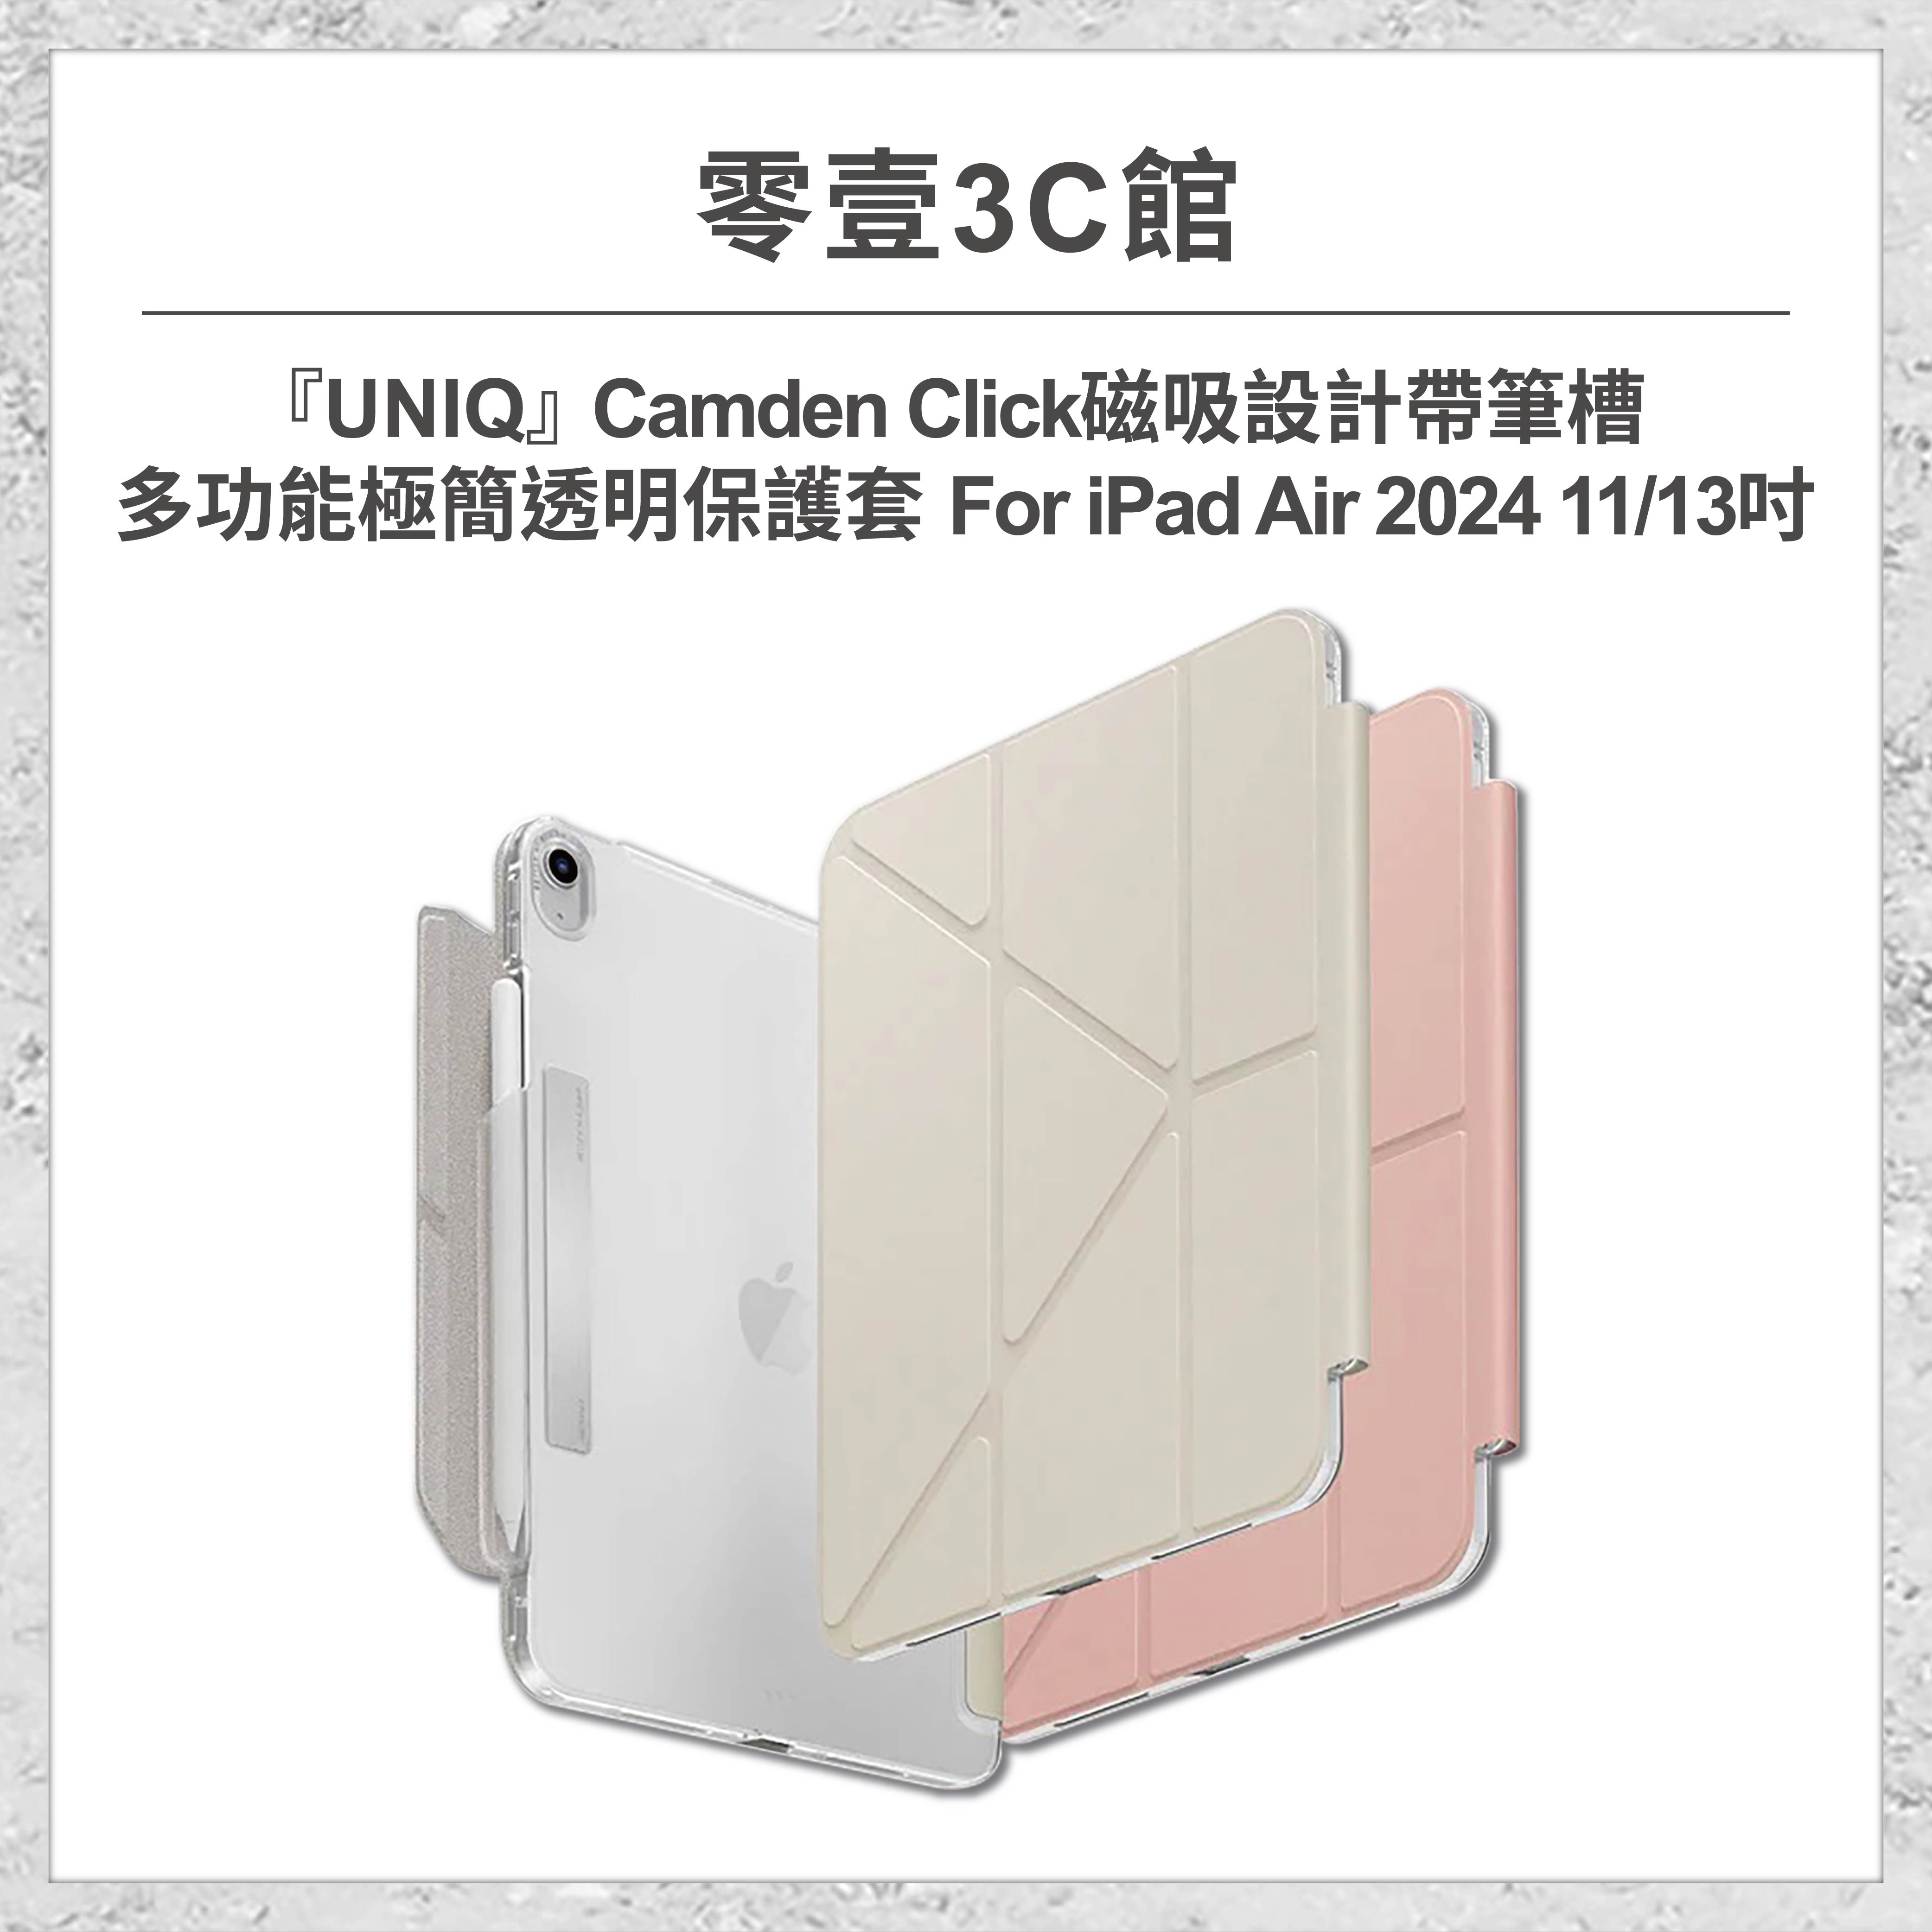 🔺預購款🔺『UNIQ』Camden Click 磁吸設計帶筆槽多功能極簡透明保護套for iPad Air 2024 11/13吋